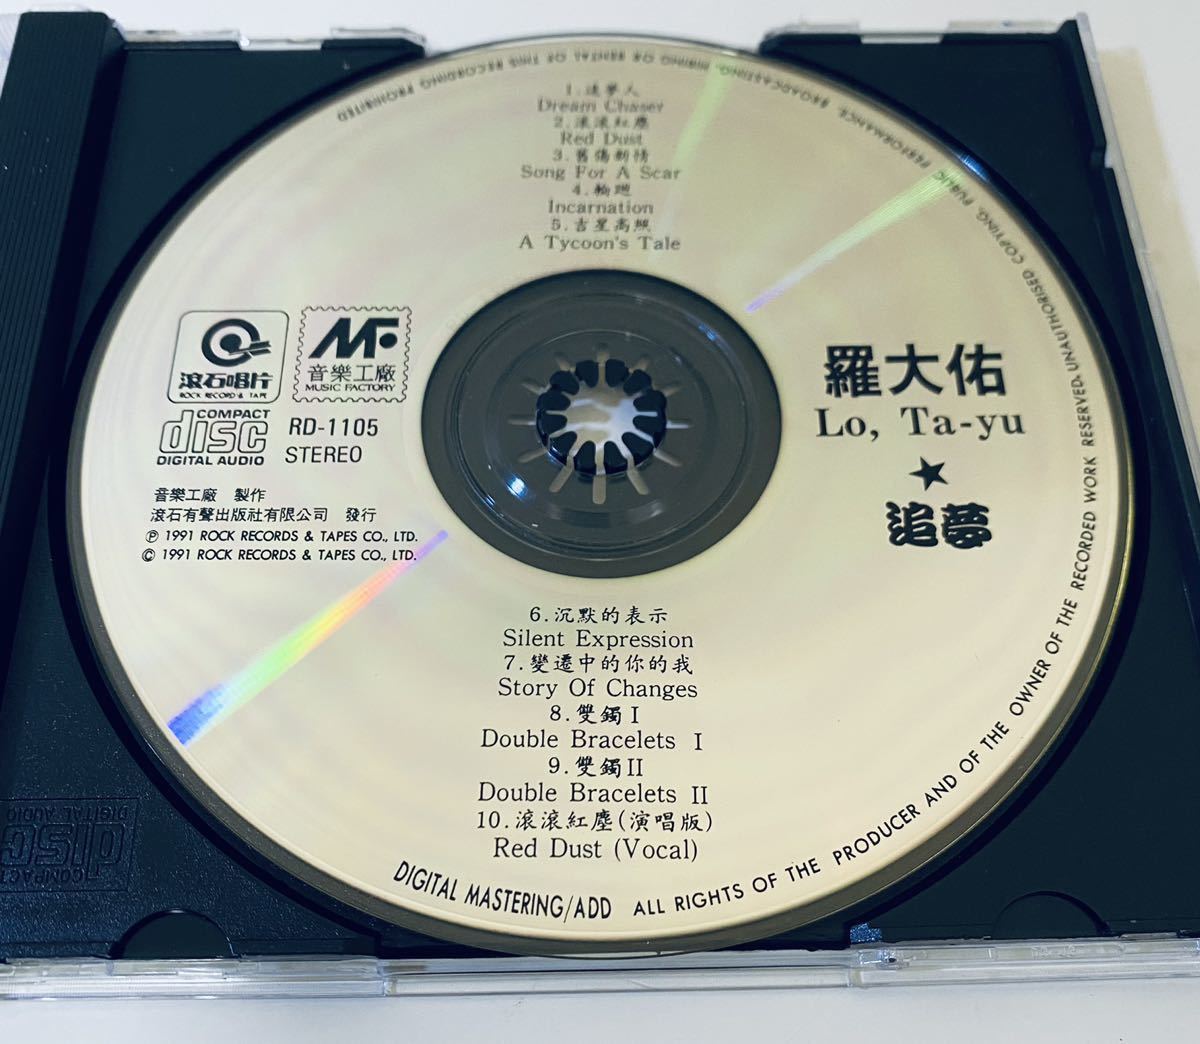  【羅大佑 (追夢)】CD/Lo Ta yu/ルオダーヨウ/ロオターヨウ/台湾/TAIWAN/LoTayu_画像4